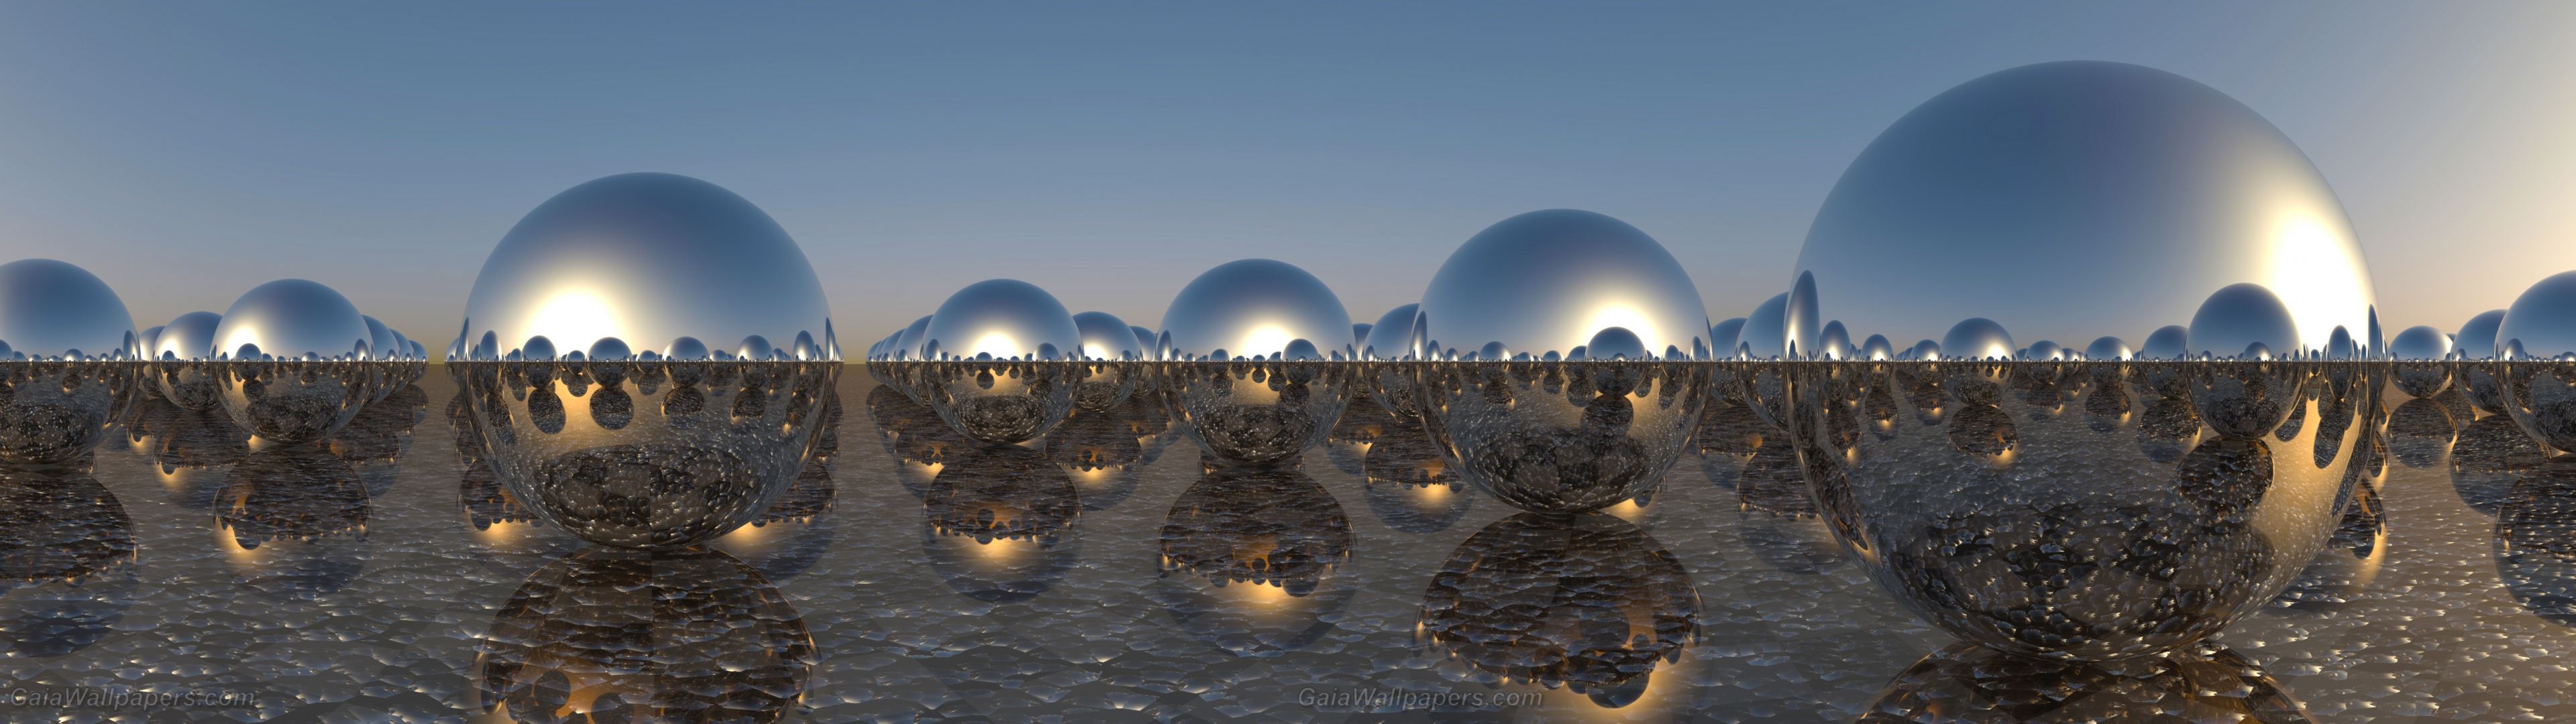 Lever de soleil dans un monde de sphères chromées - Fonds d'écran gratuits